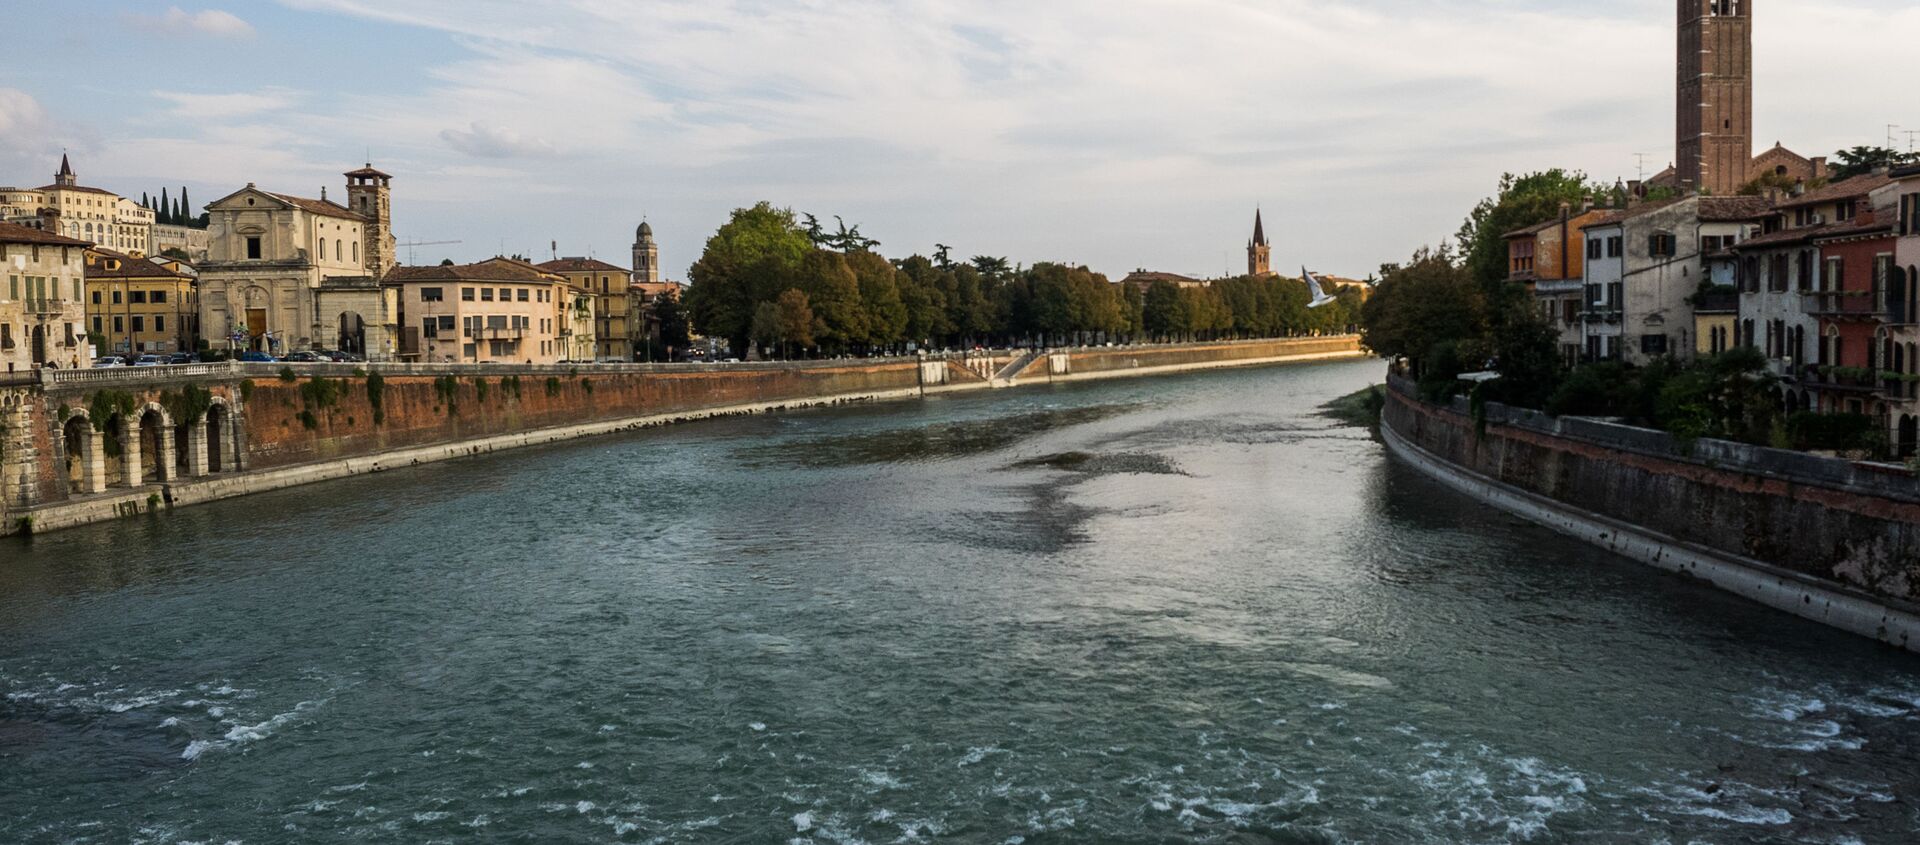 The Adige river in Verona, Italy - Sputnik International, 1920, 22.10.2020